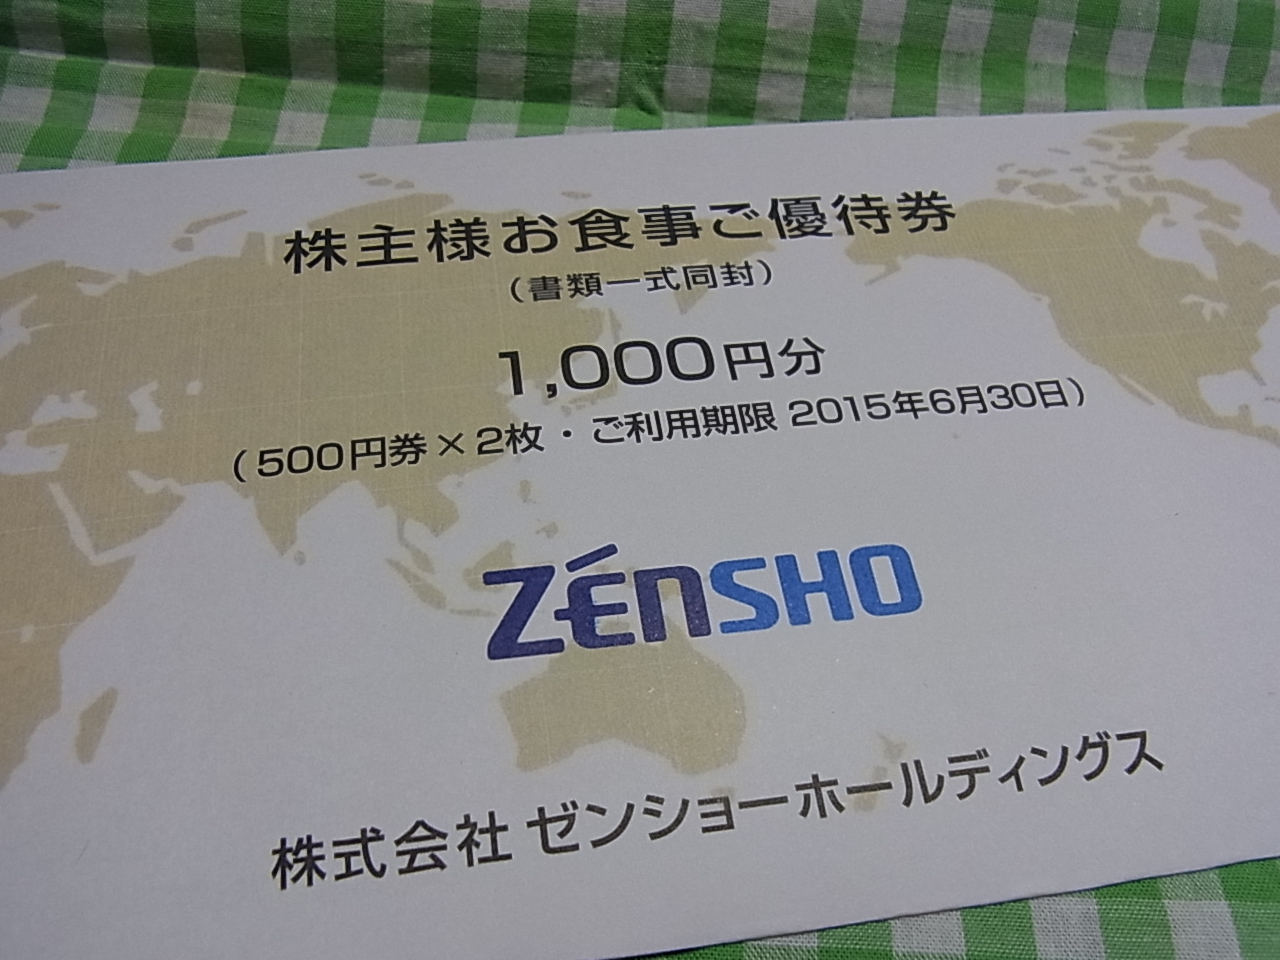 zensho_1.jpg